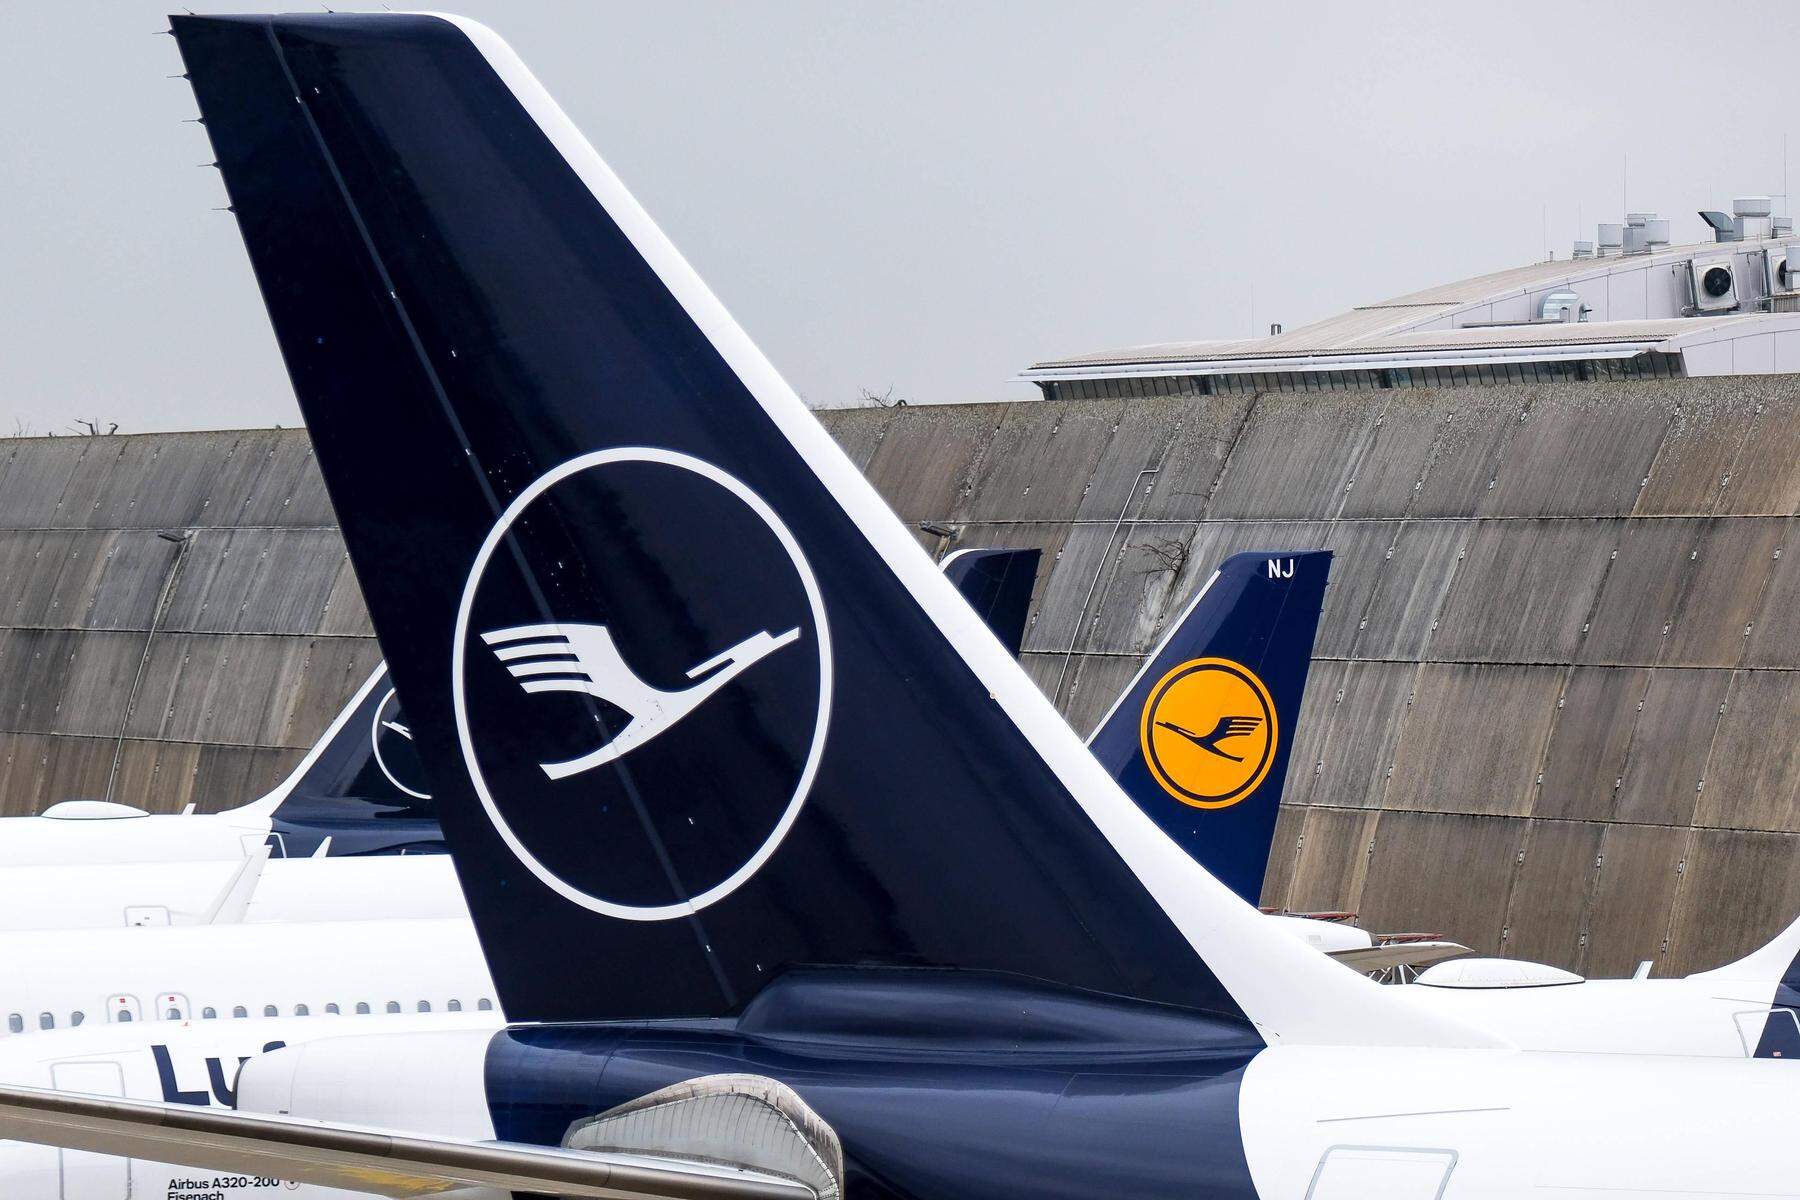 Osterurlaube in Gefahr: Lufthansa versucht in „geheimen Verhandlungen“ Oster-Streiks beim Bodenpersonal abzuwenden